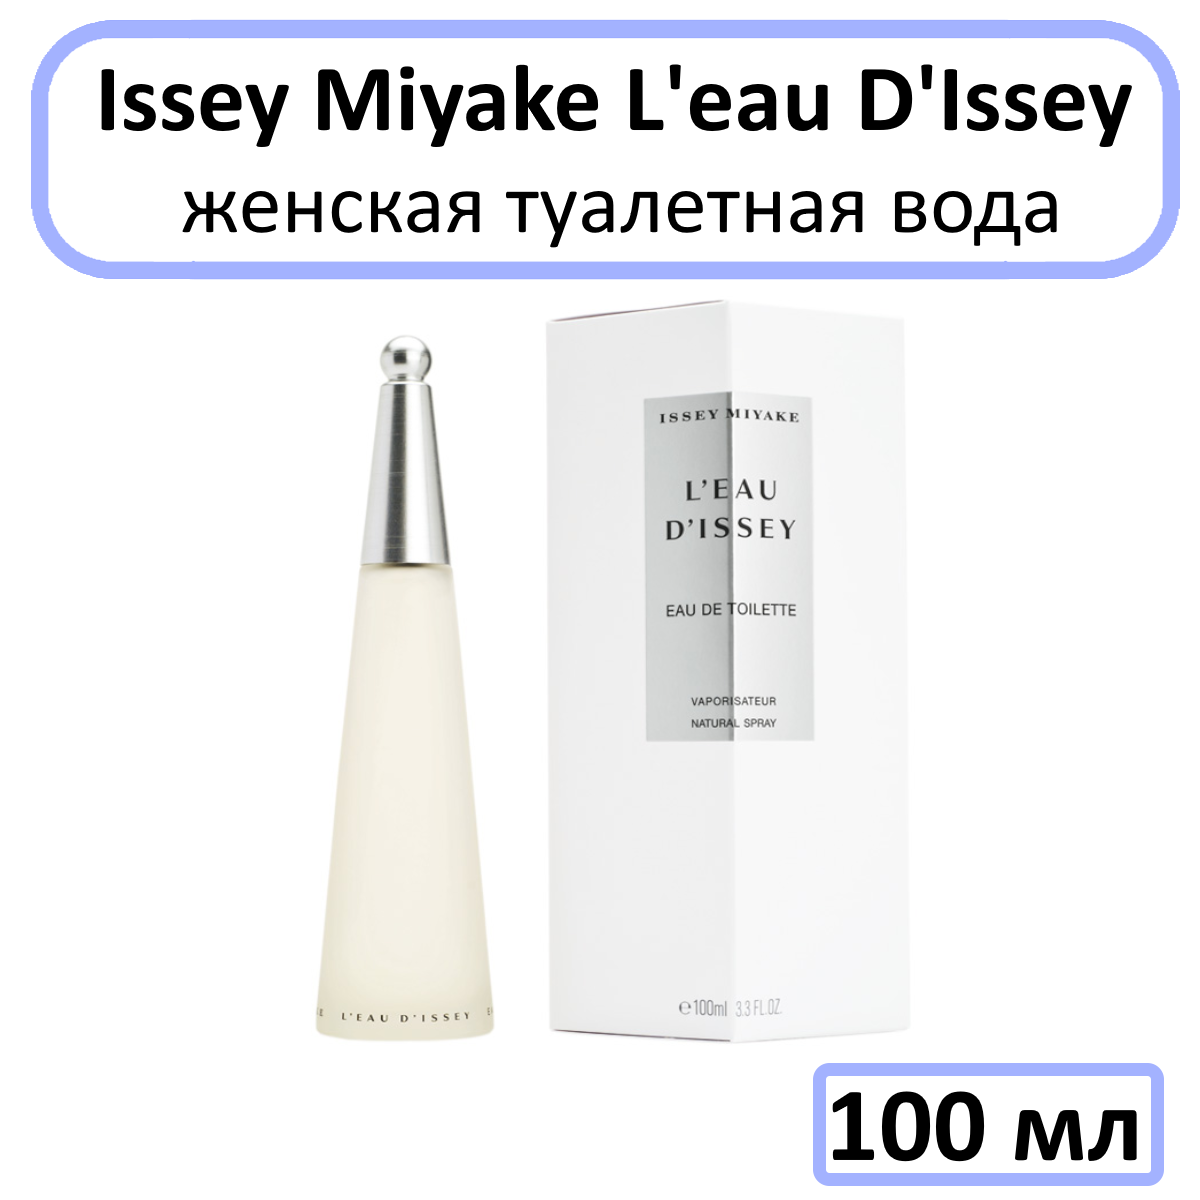 Issey Miyake туалетная вода L'eau D'Issey, 100 мл